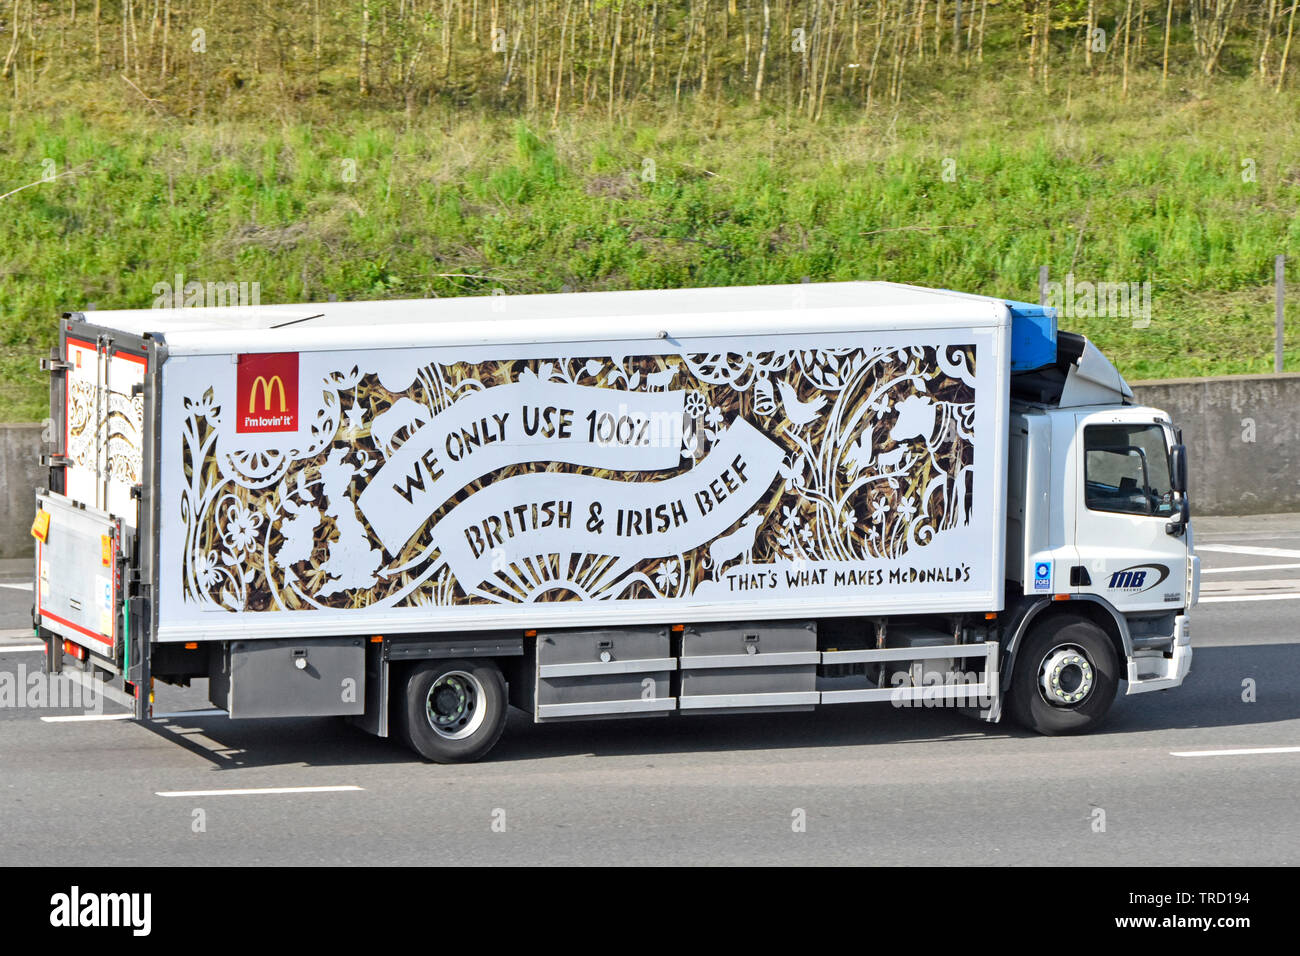 Seitenansicht der Marke McDonalds Fast Food Restaurant business Food Supply chain Lieferung LKW LKW-Werbung verwenden, Britische & irische Rindfleisch auf de Autobahn Stockfoto